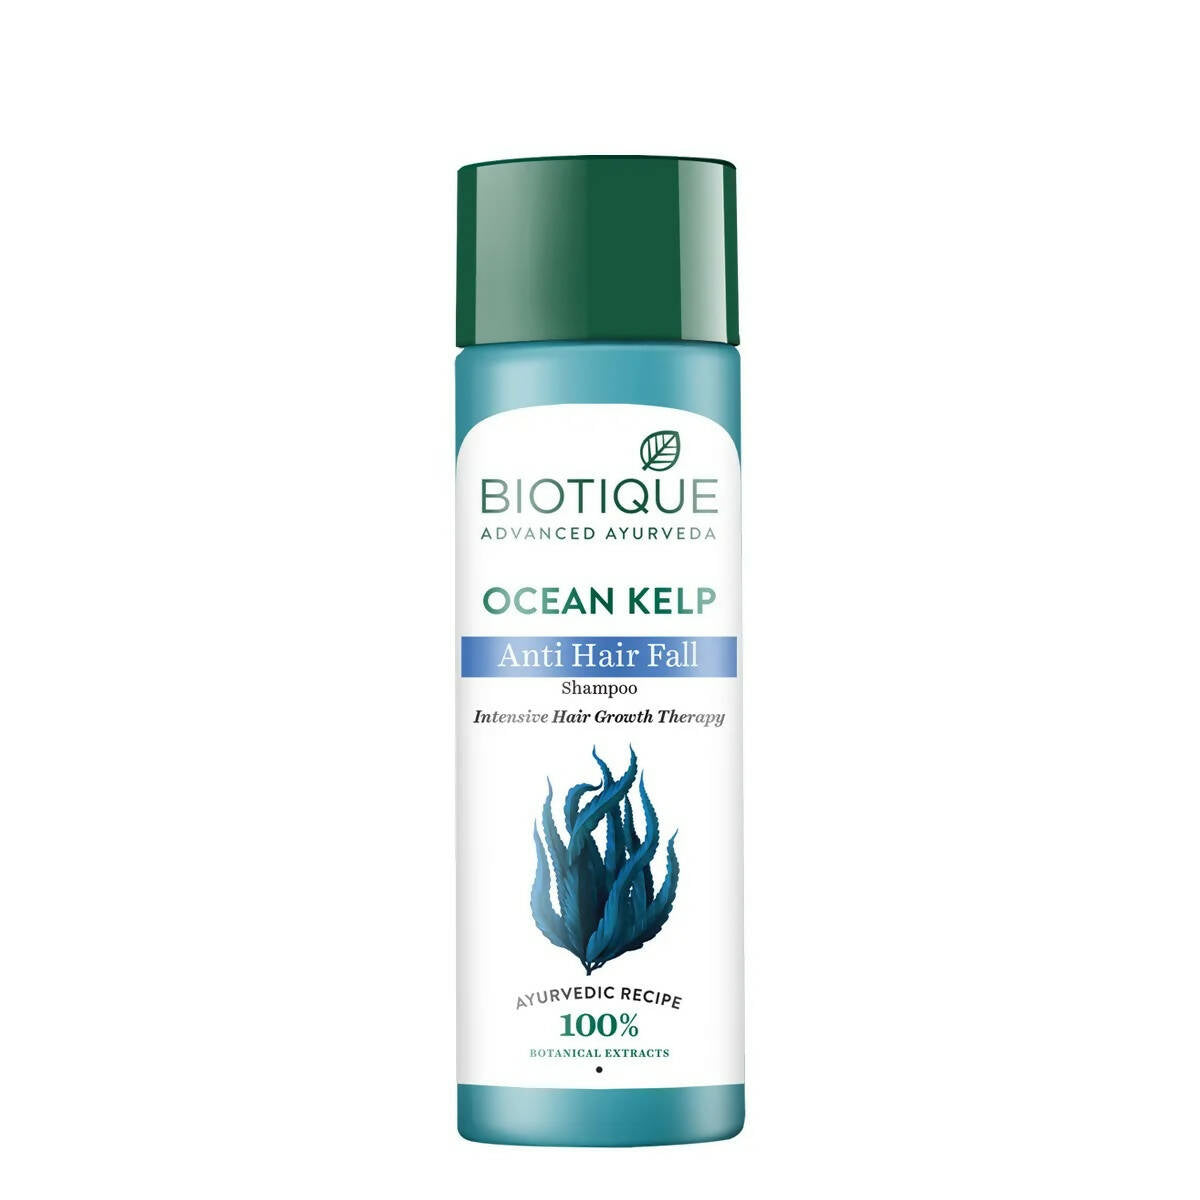 Biotique Ocean Kelp Anti Hair Fall Shampoo - Buy in USA AUSTRALIA CANADA